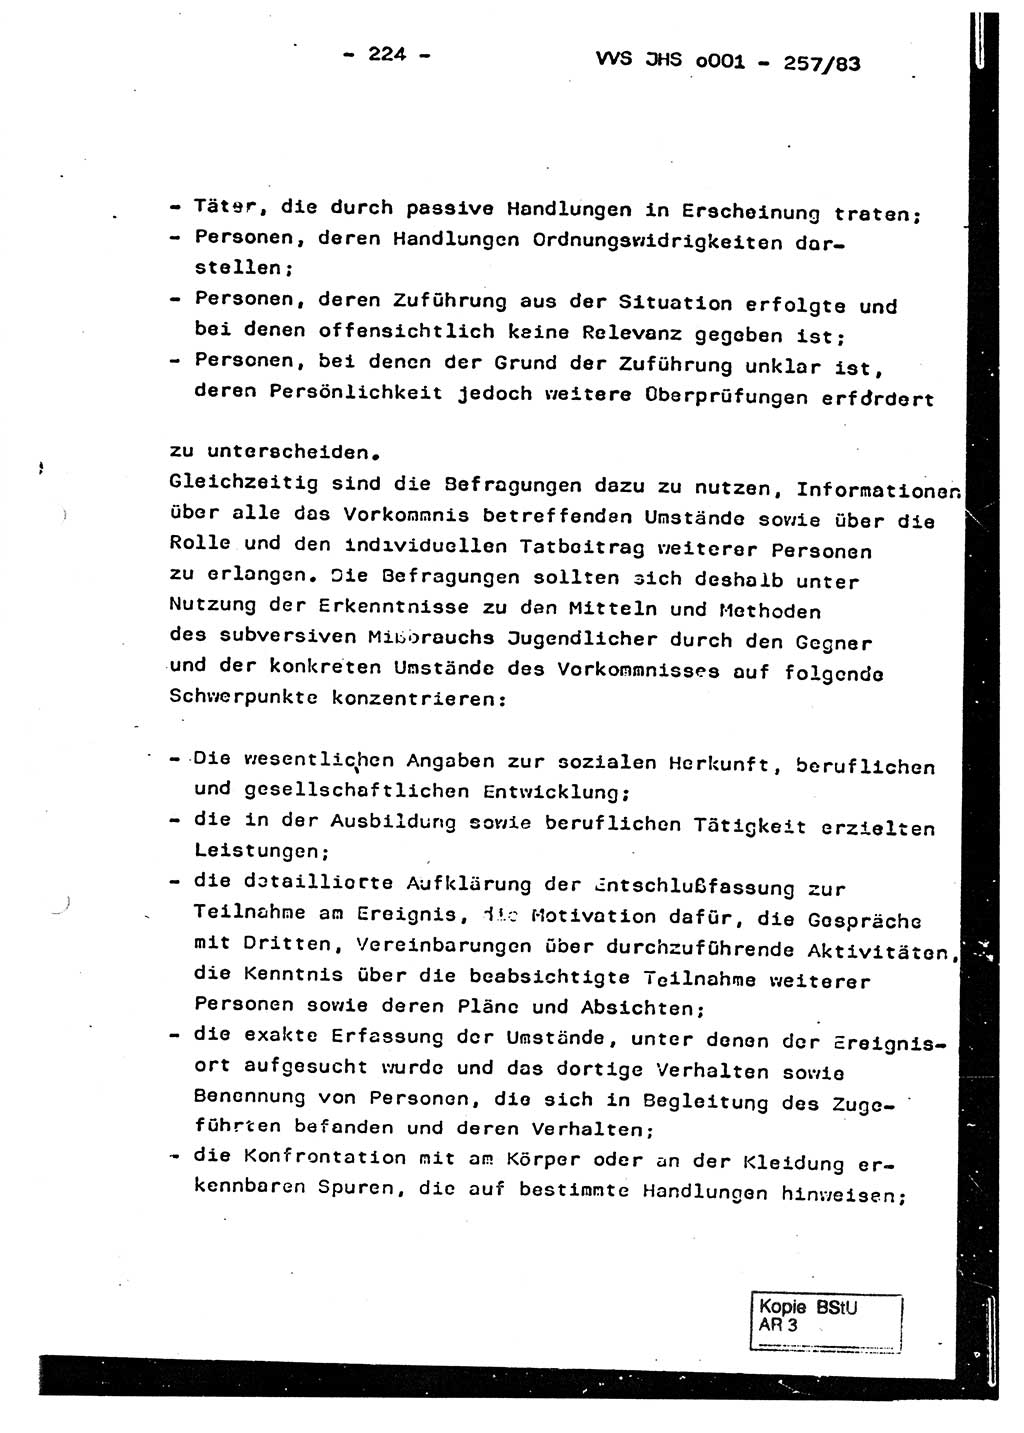 Dissertation, Oberst Helmut Lubas (BV Mdg.), Oberstleutnant Manfred Eschberger (HA IX), Oberleutnant Hans-Jürgen Ludwig (JHS), Ministerium für Staatssicherheit (MfS) [Deutsche Demokratische Republik (DDR)], Juristische Hochschule (JHS), Vertrauliche Verschlußsache (VVS) o001-257/83, Potsdam 1983, Seite 224 (Diss. MfS DDR JHS VVS o001-257/83 1983, S. 224)